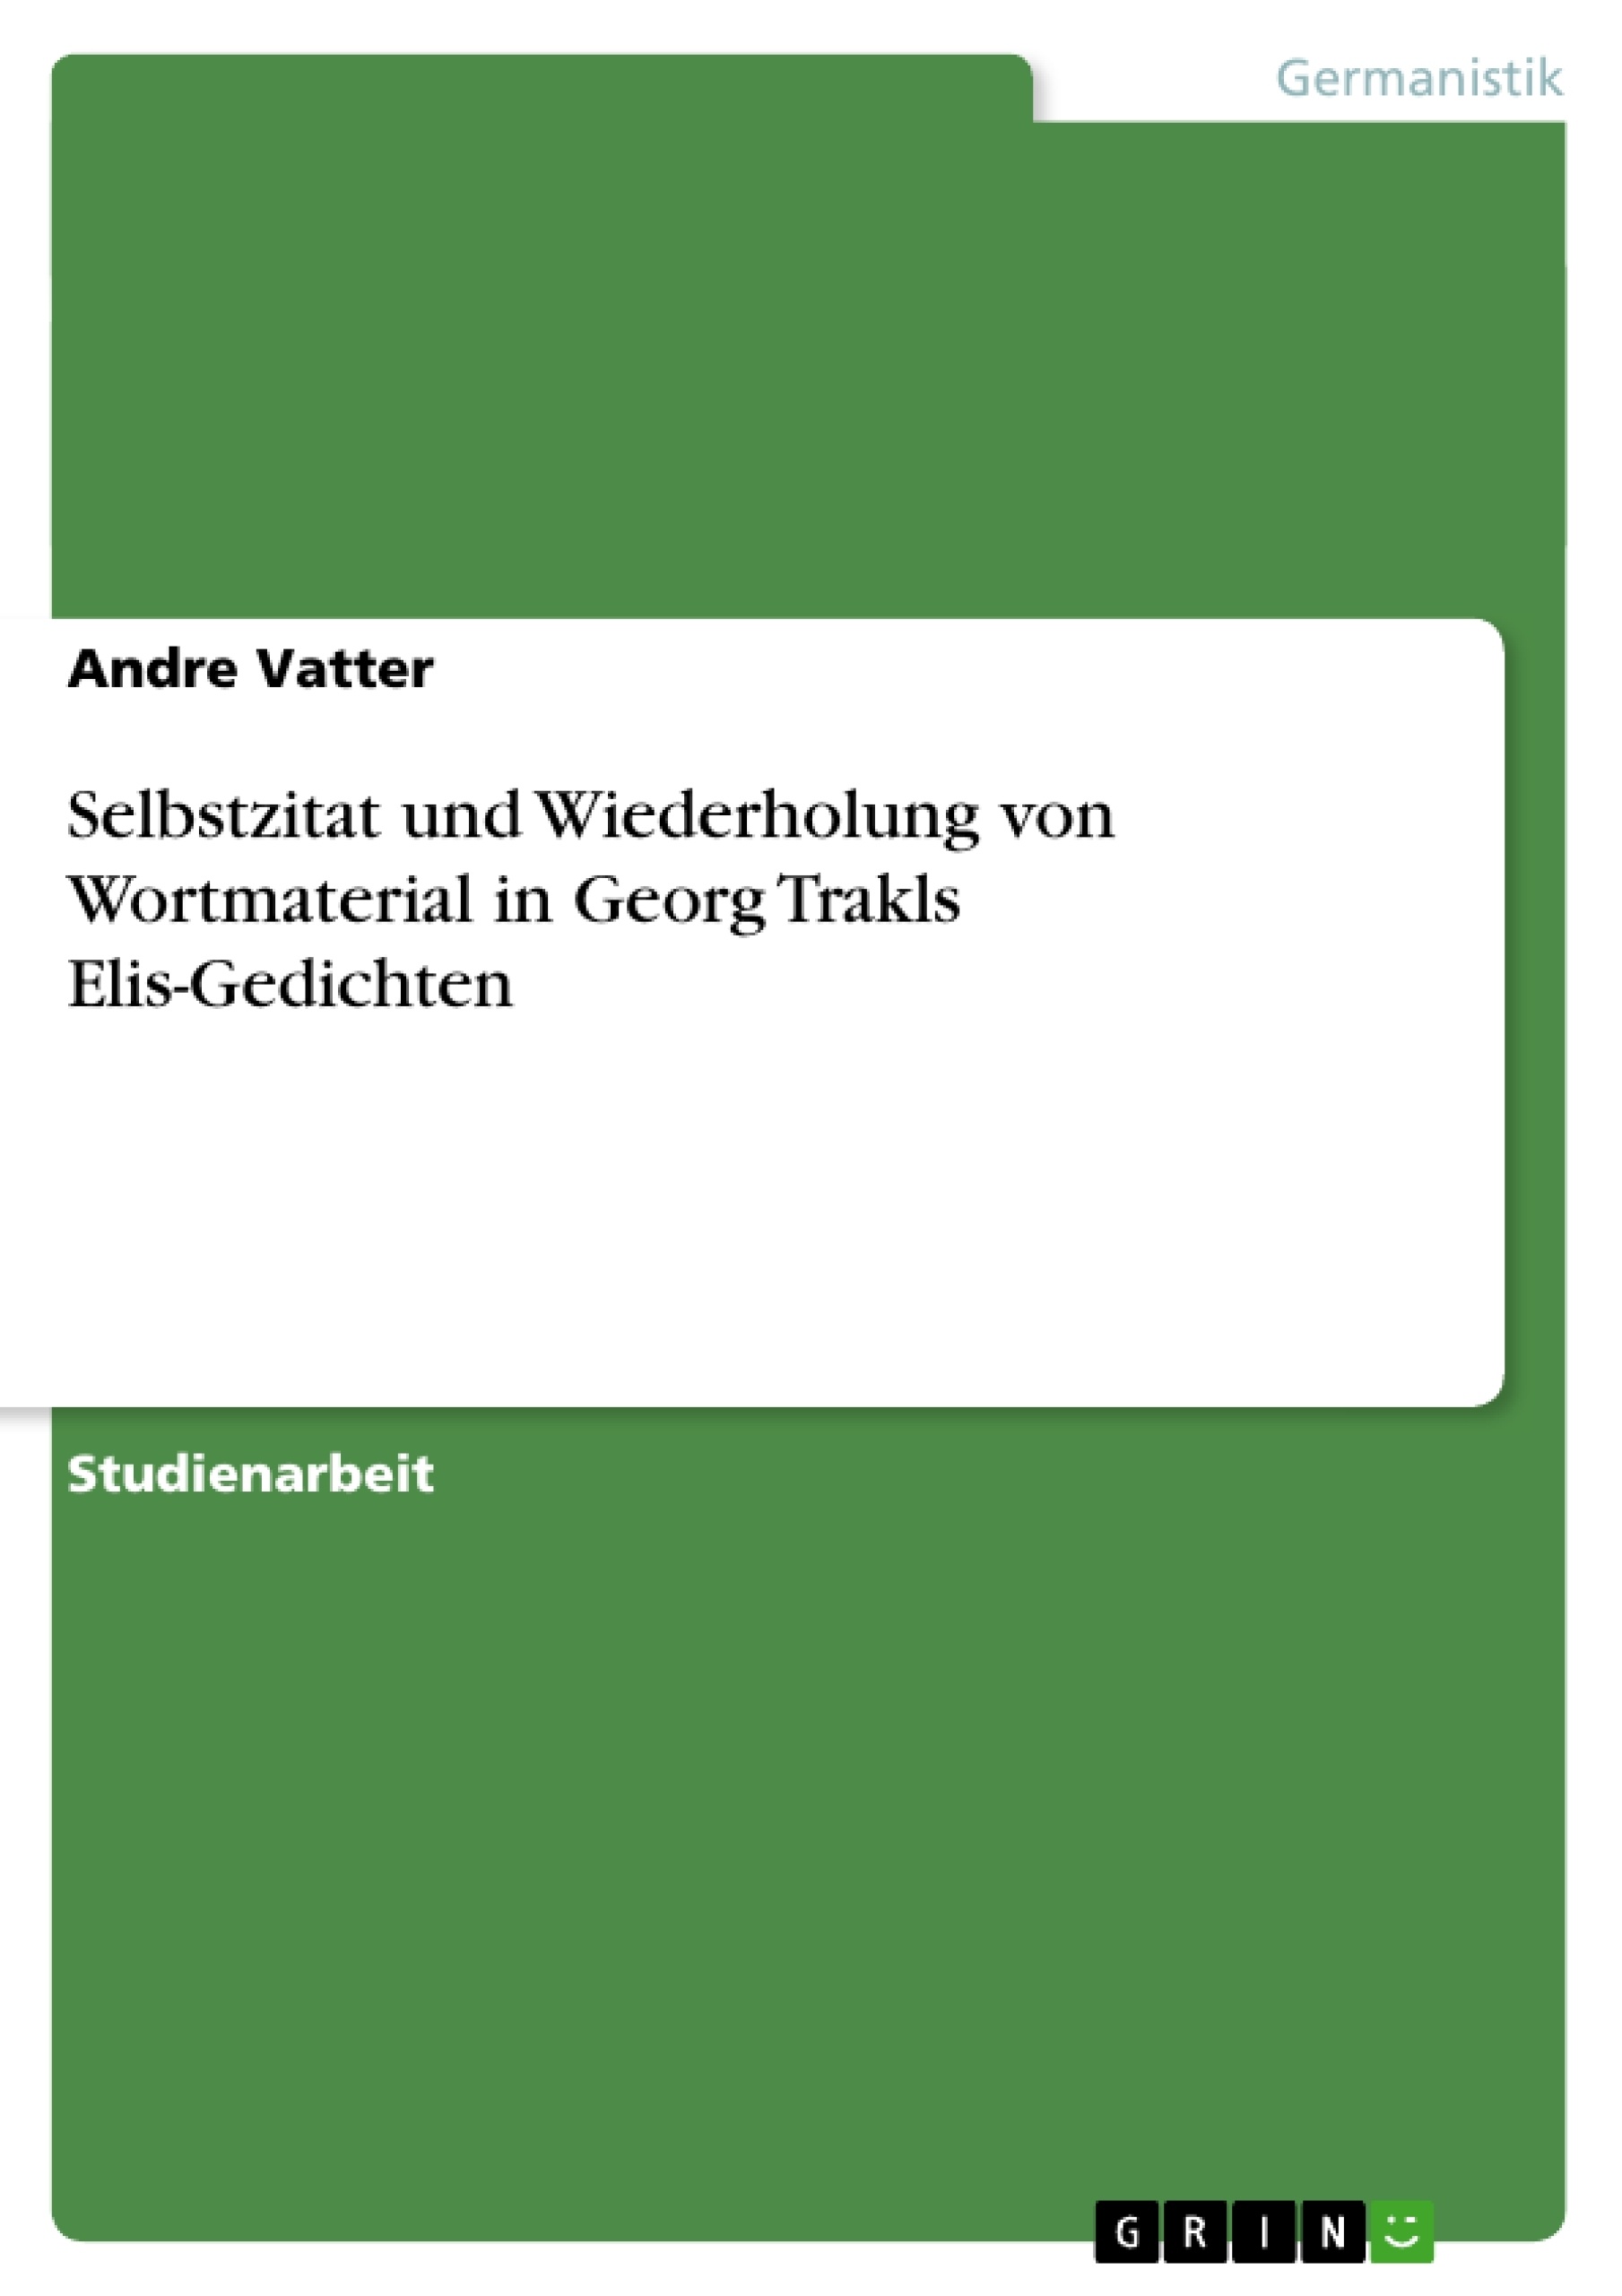 Titre: Selbstzitat und Wiederholung von Wortmaterial in Georg Trakls Elis-Gedichten